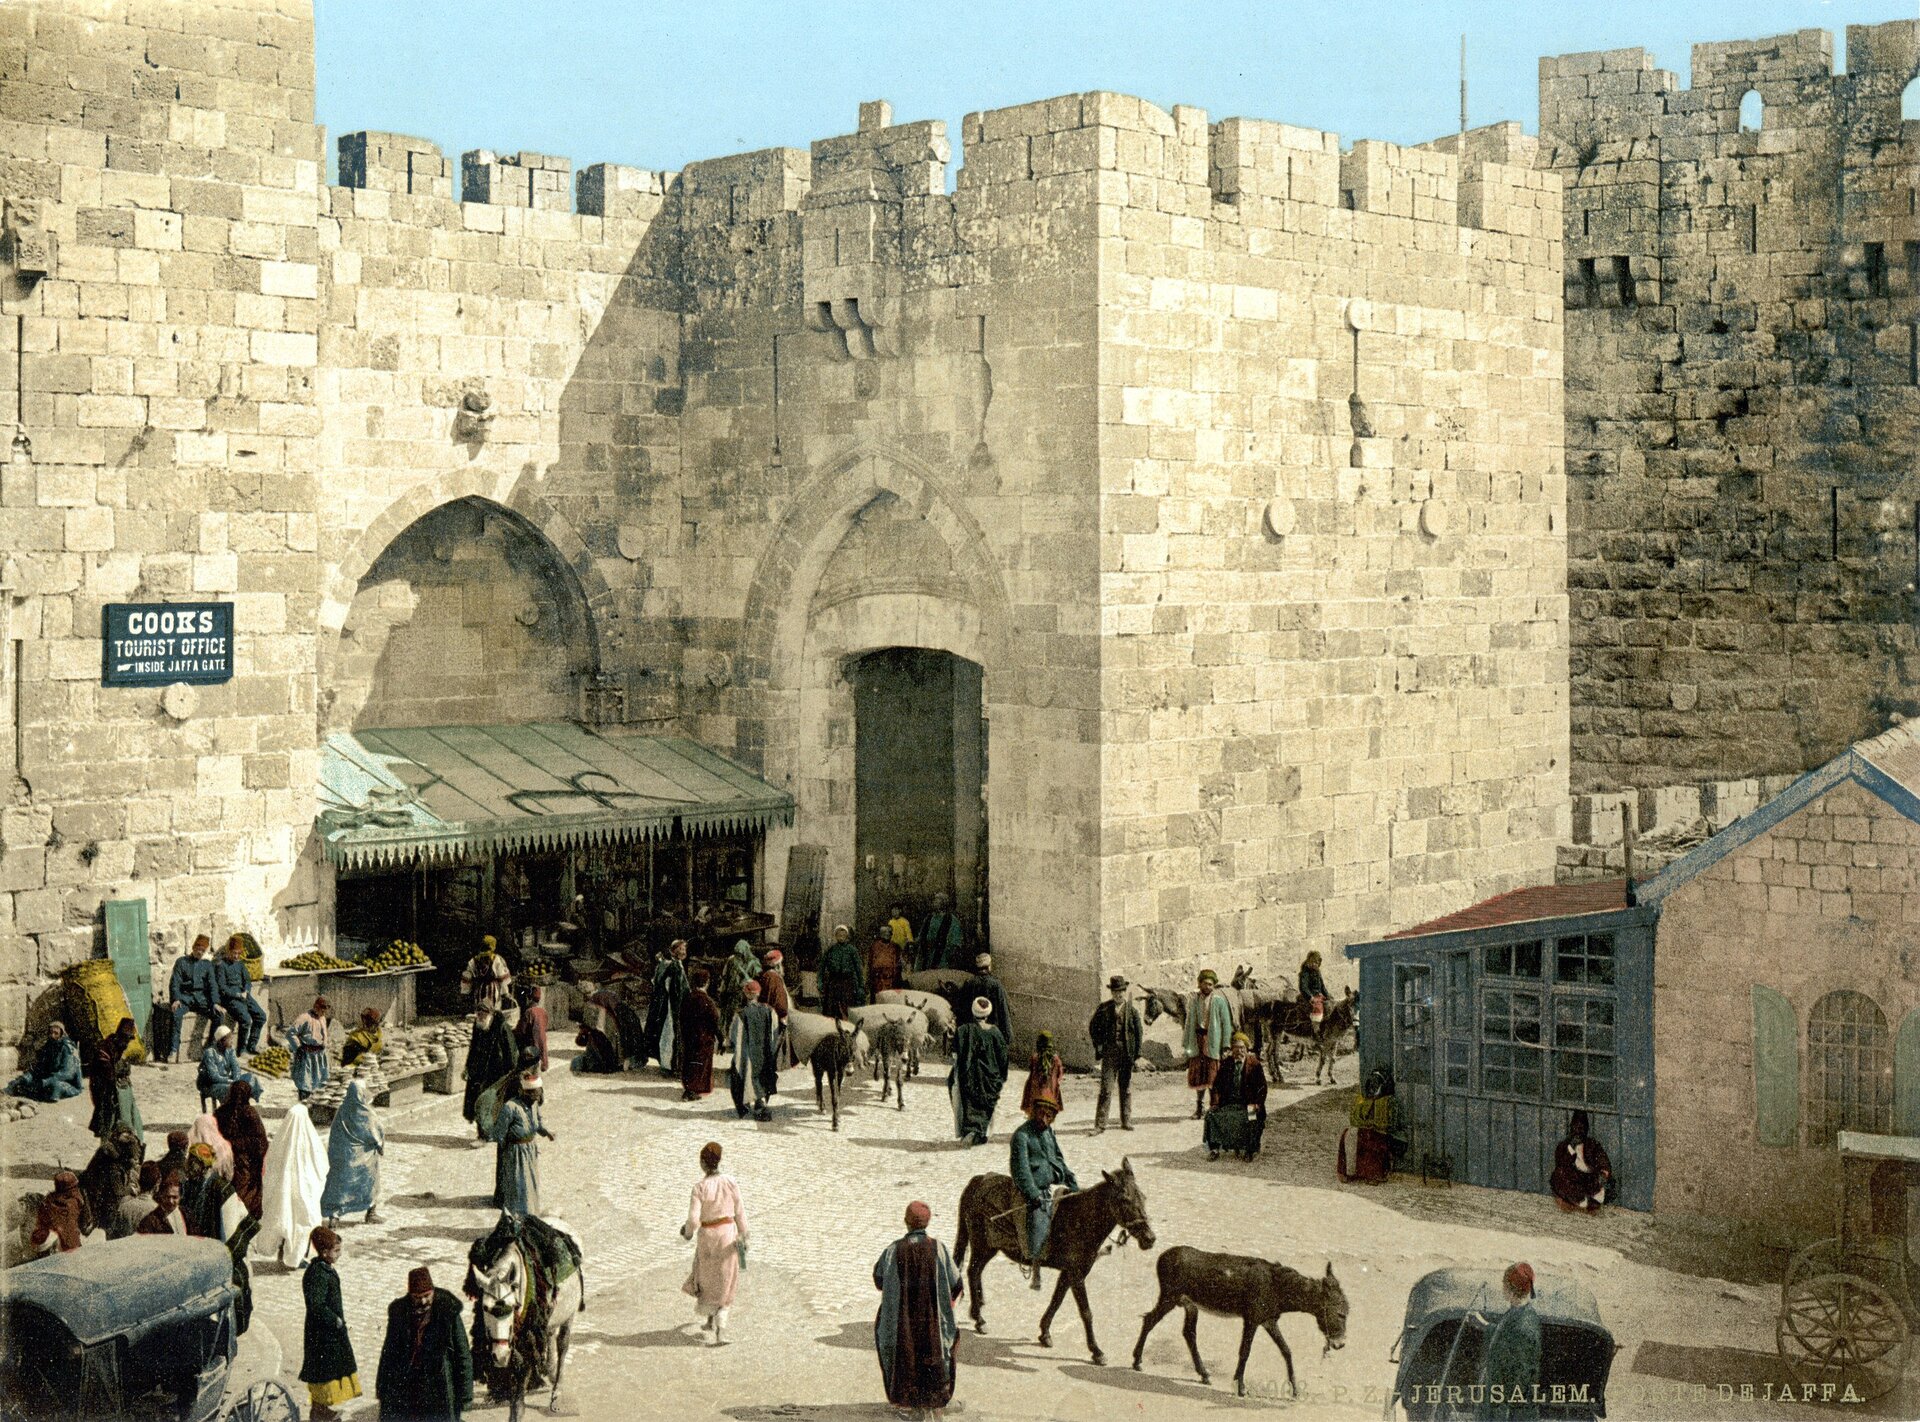 Ilustracja przedstawia obraz placu handlowego w Jerozolimie. Na placu znajdują się stragany, po placu spacerują kupujący oraz handlarze ciągnący zwierzęta. Wszyscy ubrani w charakterystyczne, arabskie stroje. Plac otaczają ceglaste mury Jerozolimy.